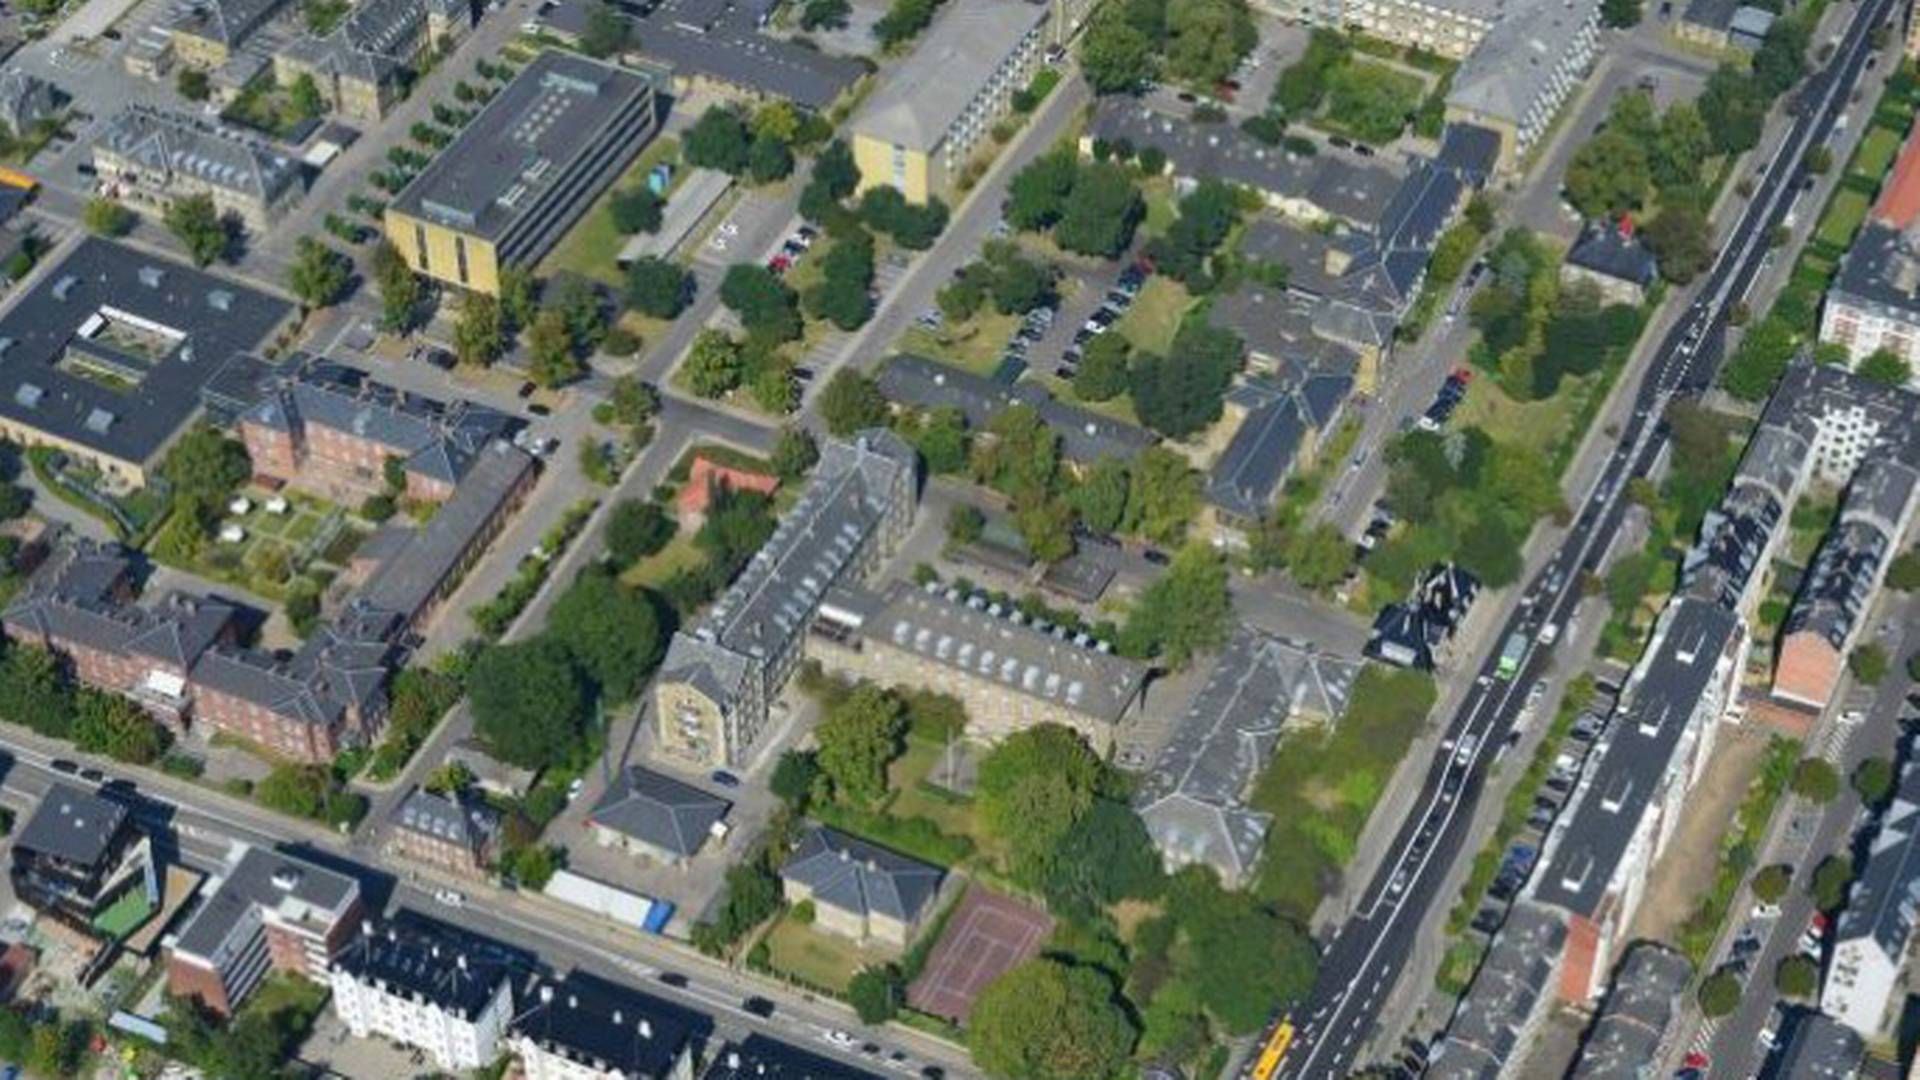 Et centralt byareal på over 100.000 kvm åbner helt nye muligheder i udviklingen af Frederiksberg. | Foto: PR / Frederiksberg Kommune